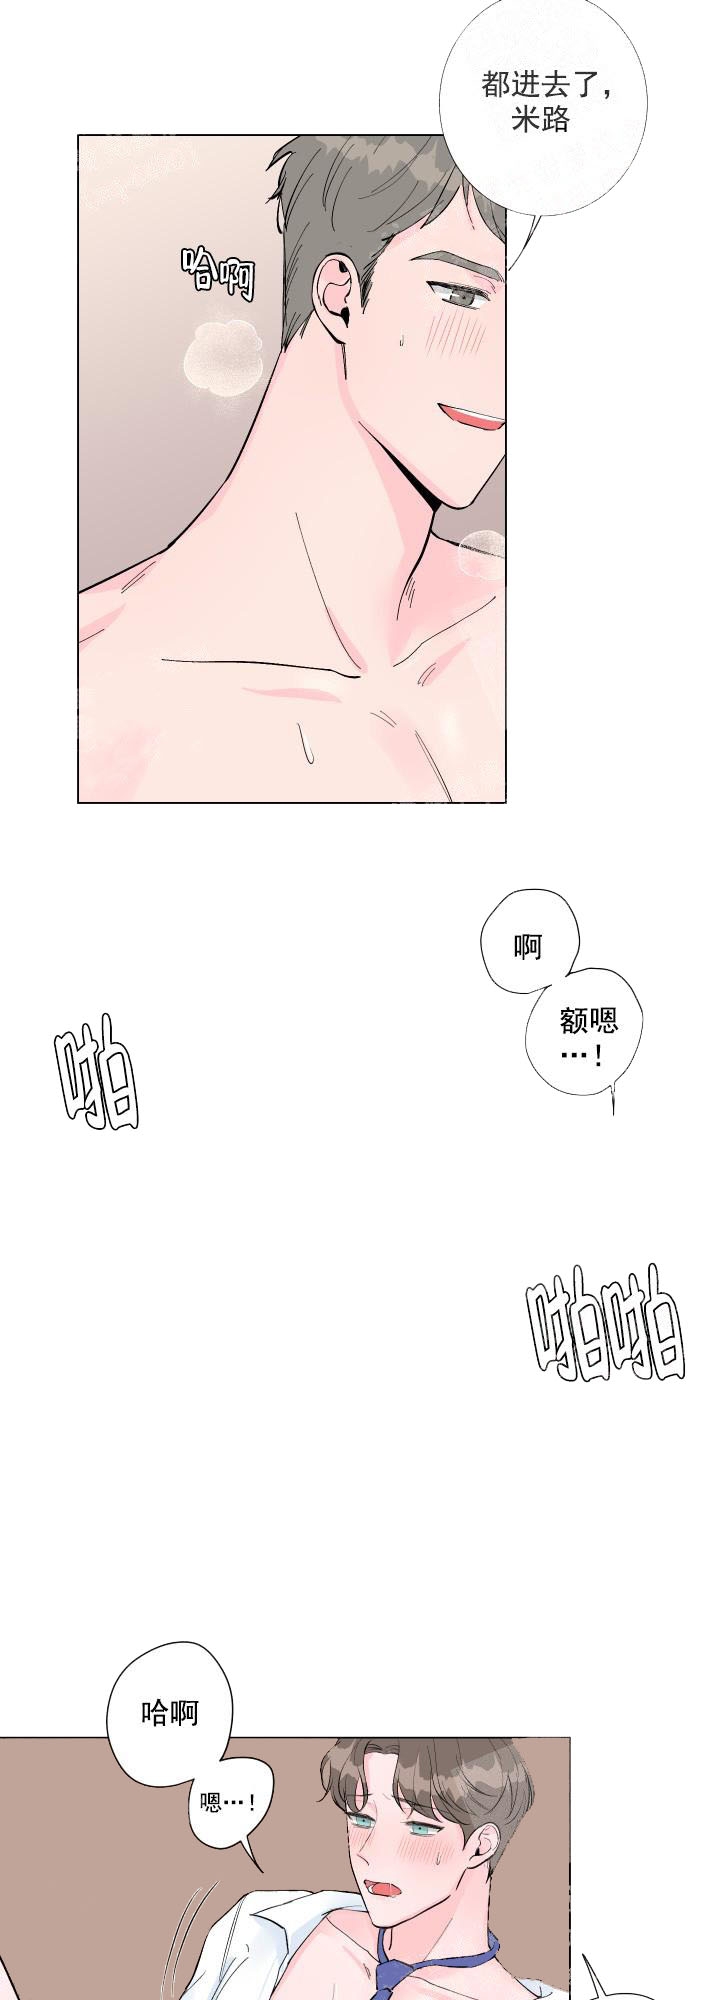 韩国污漫画 愛情與激情 第1话 3